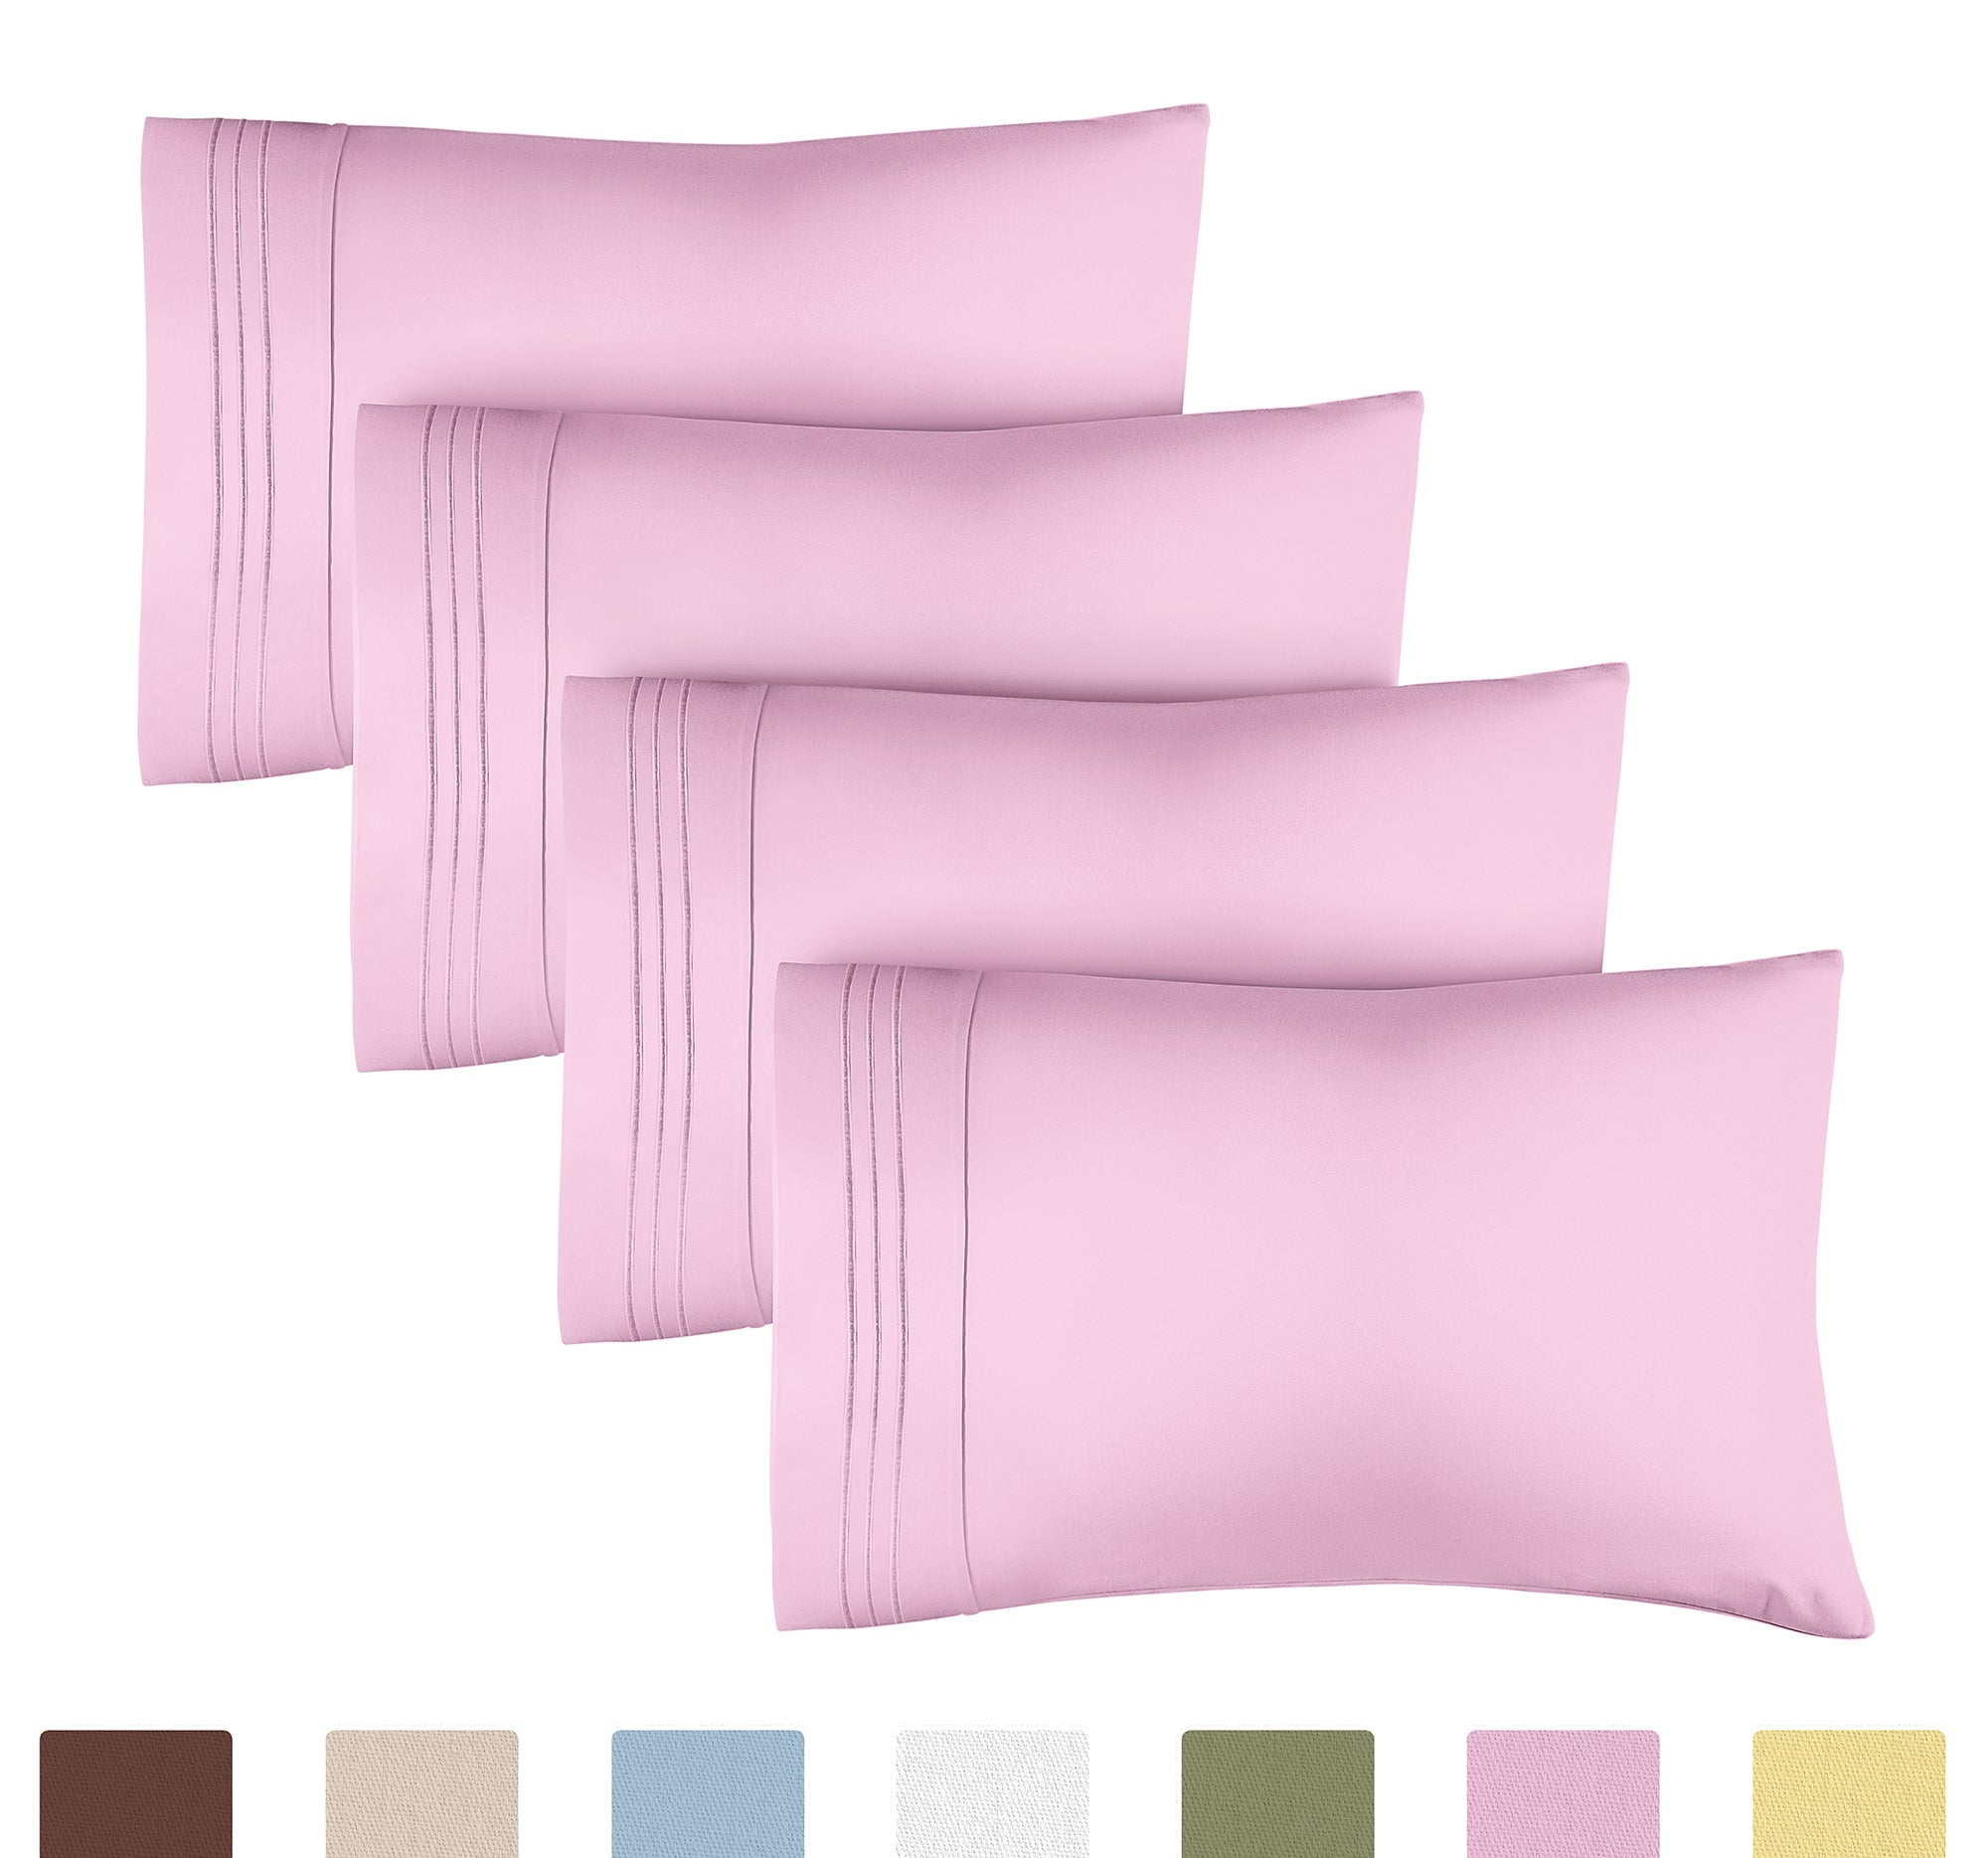 4 Pillowcase Set - Light Pink